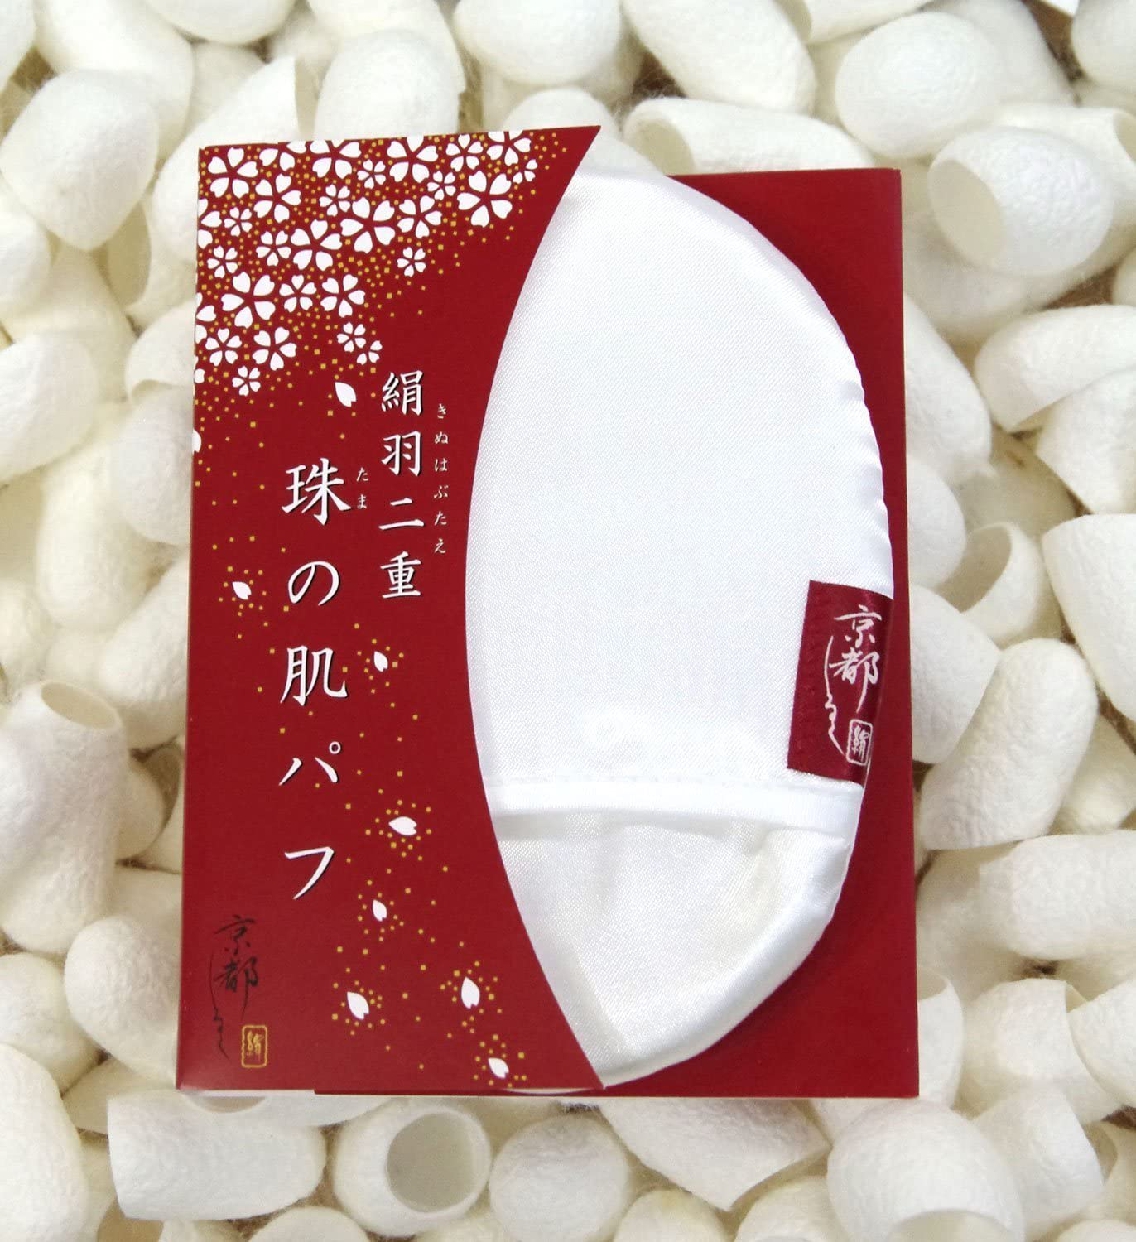 京都しるく 絹羽二重 珠の肌パフの商品画像サムネ2 